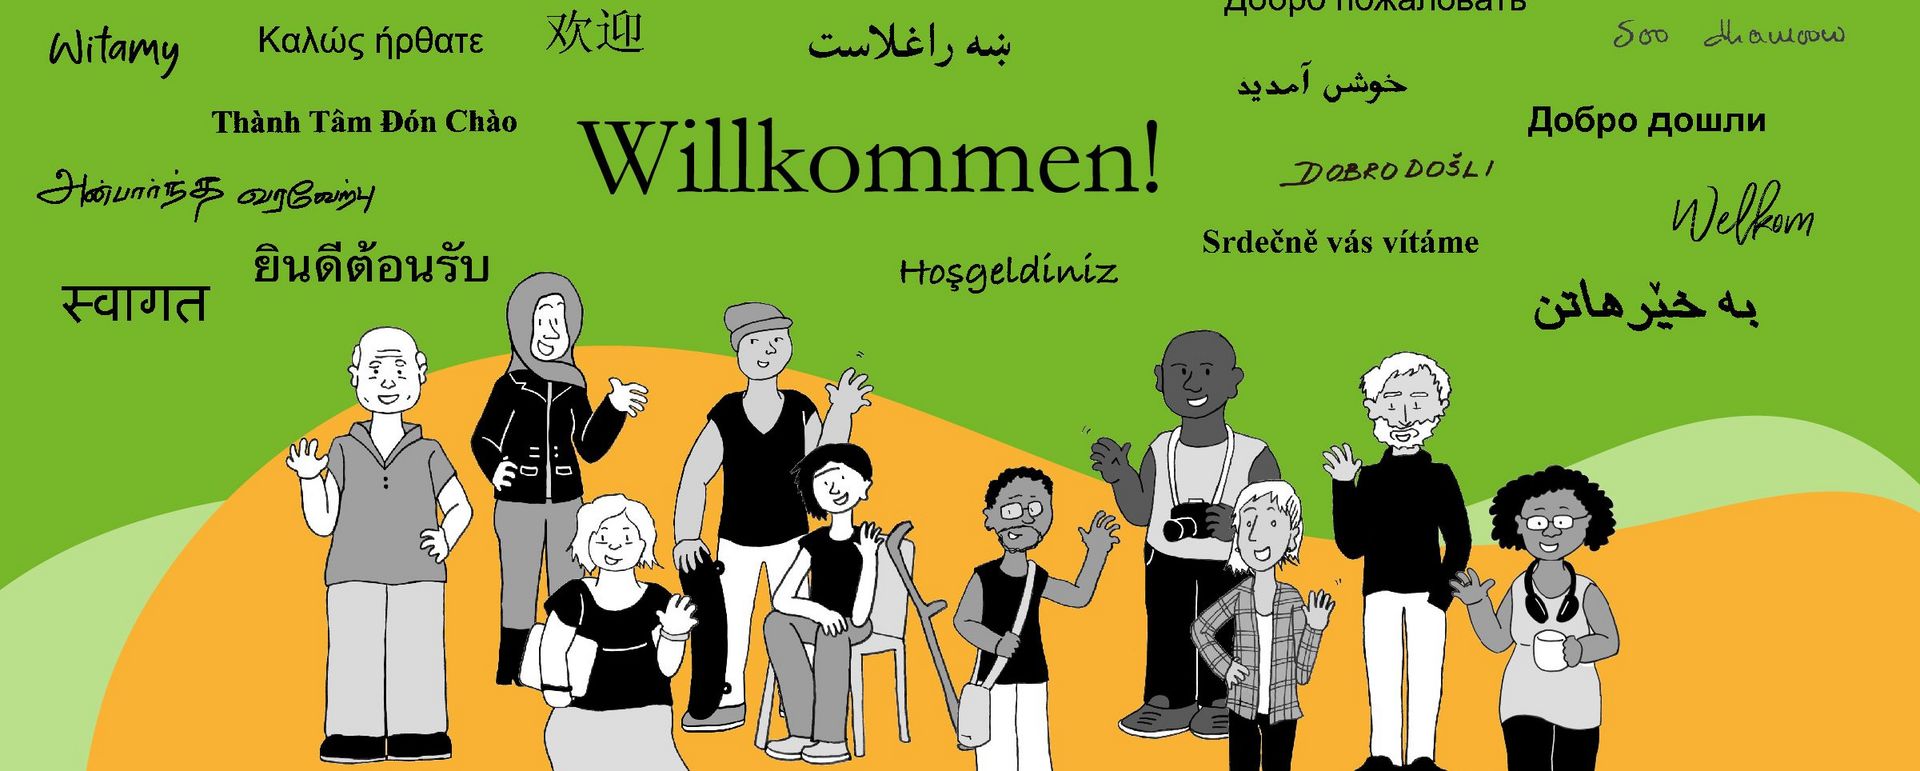 Vielfältige Gruppe von Menschen, Wort "Willkommen" in vielen verschiedenen Sprachen